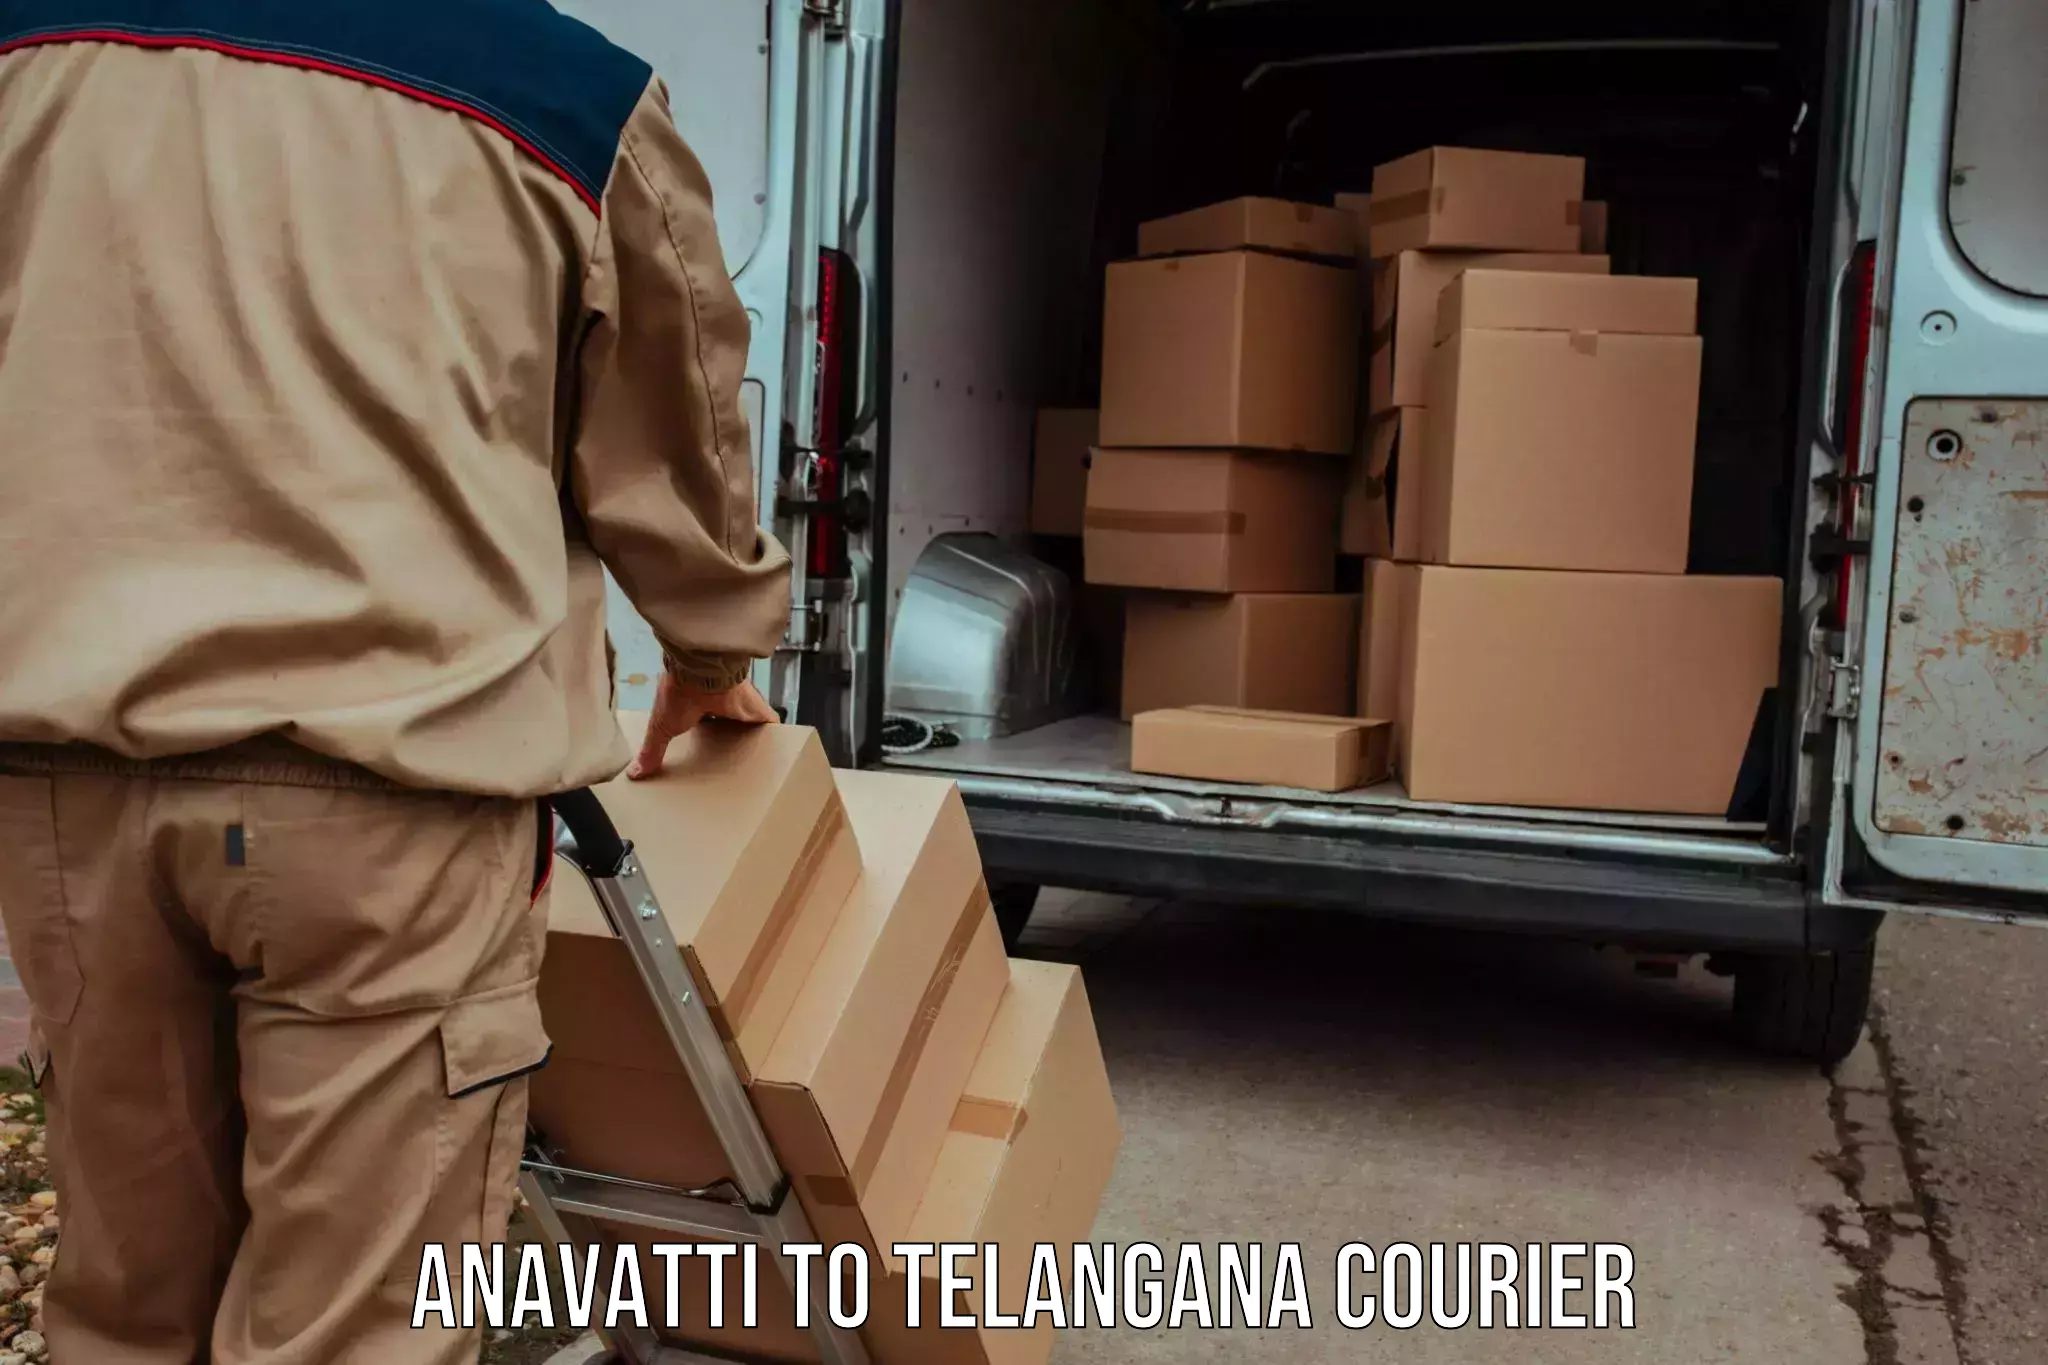 User-friendly delivery service Anavatti to Sikanderguda